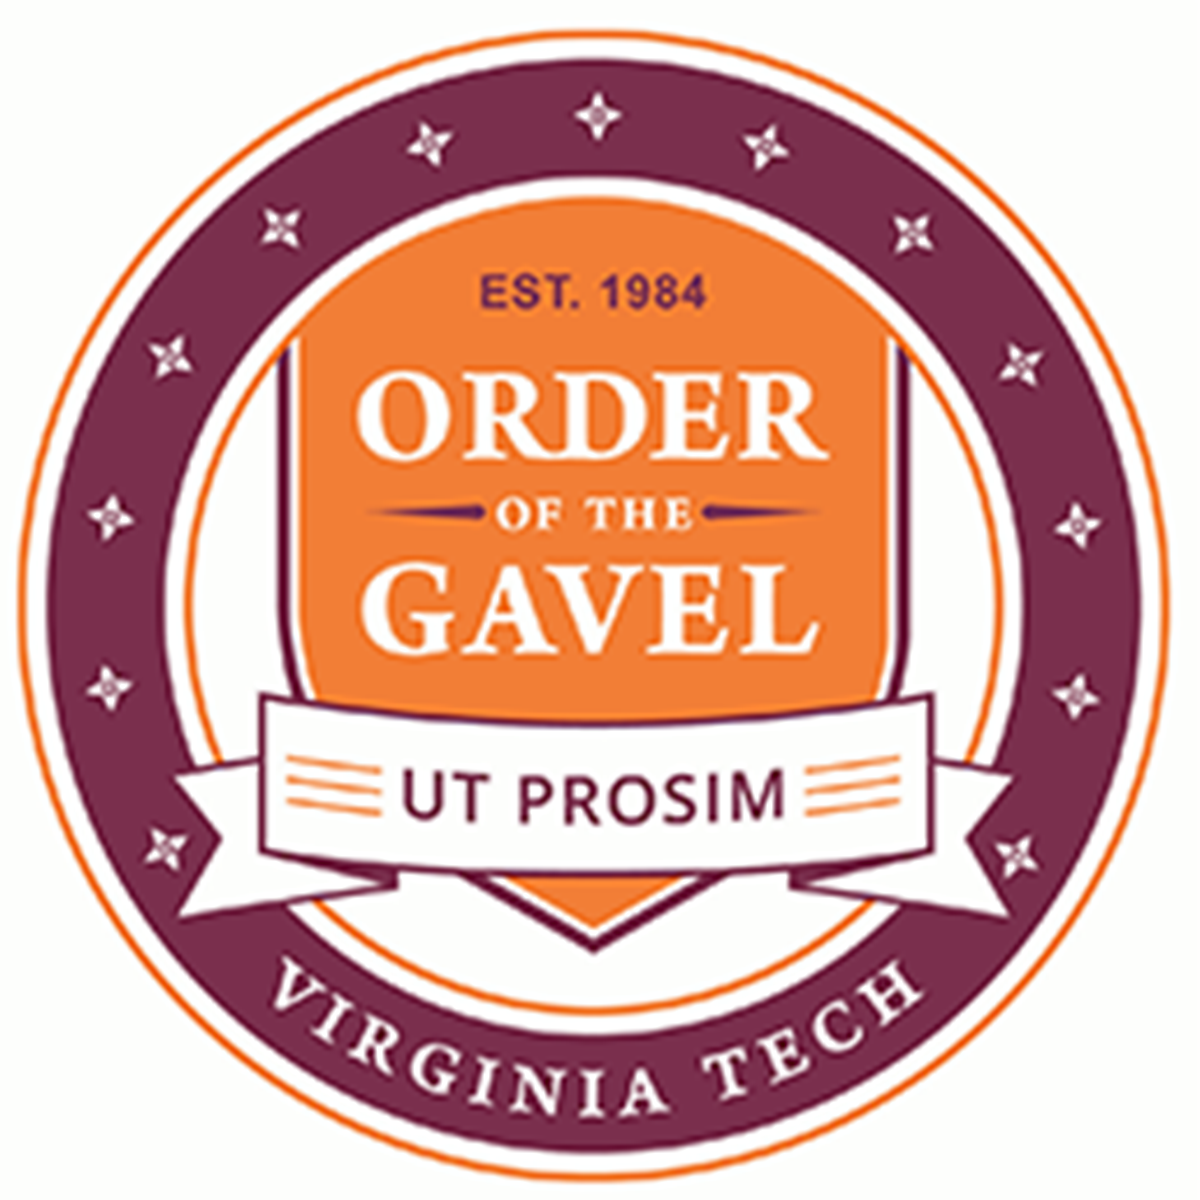 Order of the Gavel logo